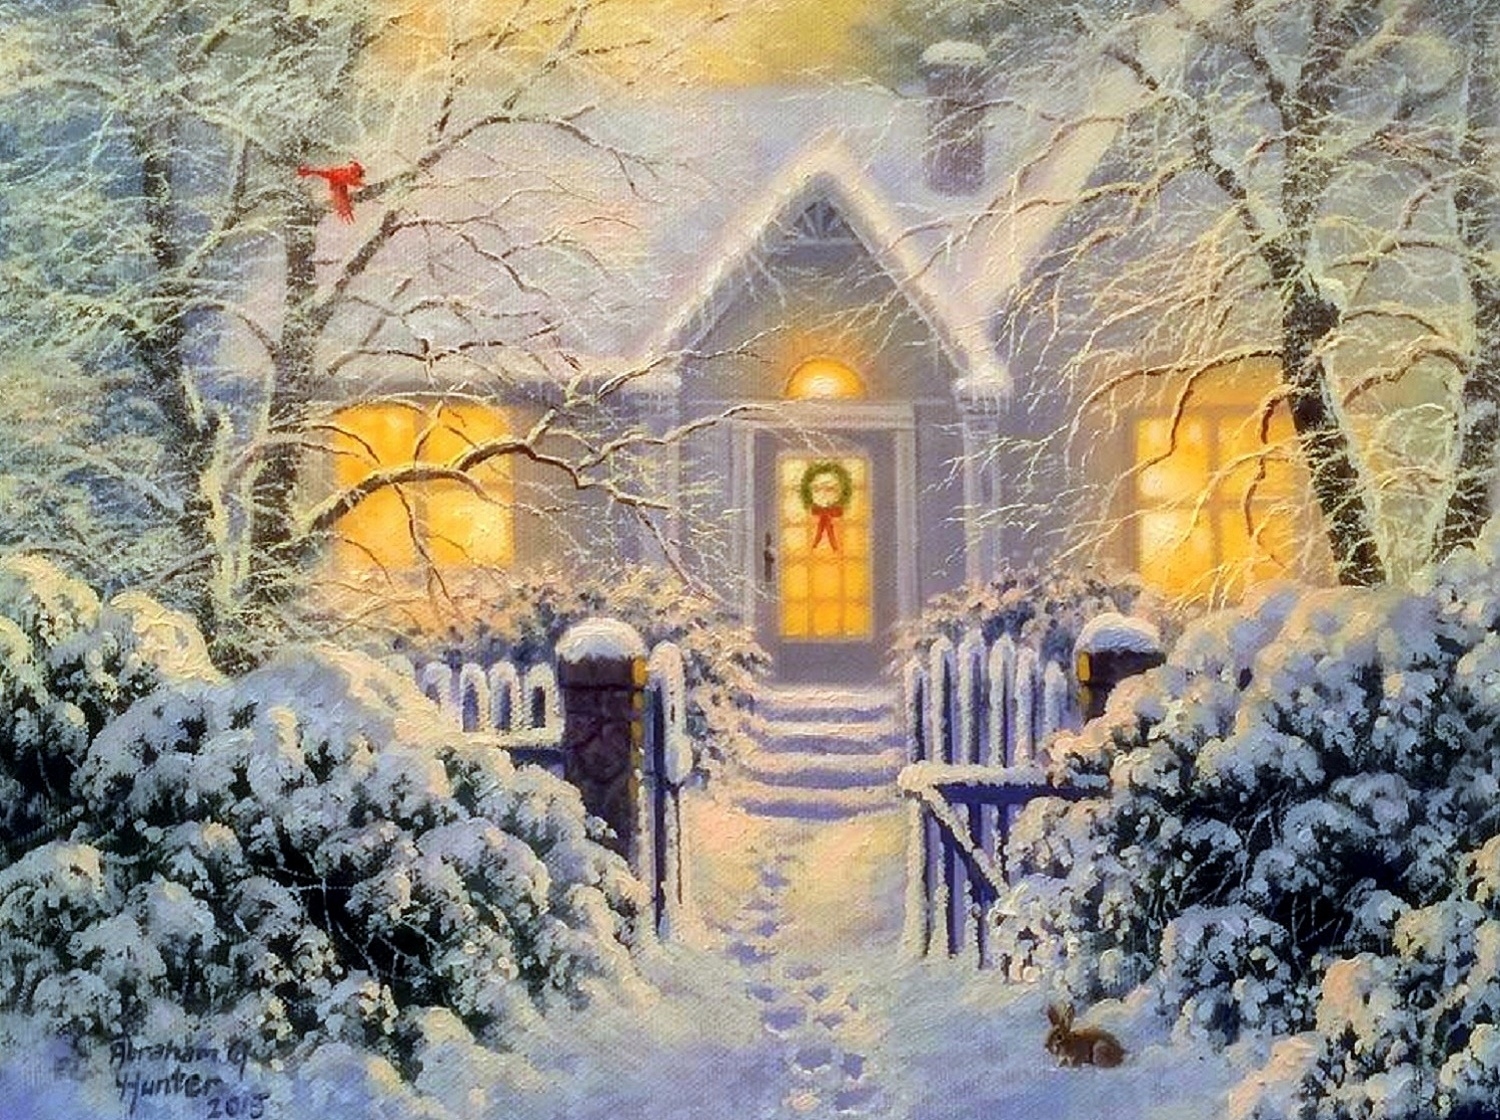 Скачать обои бесплатно Зима, Снег, Дерево, Рождество, Дом, Художественные картинка на рабочий стол ПК